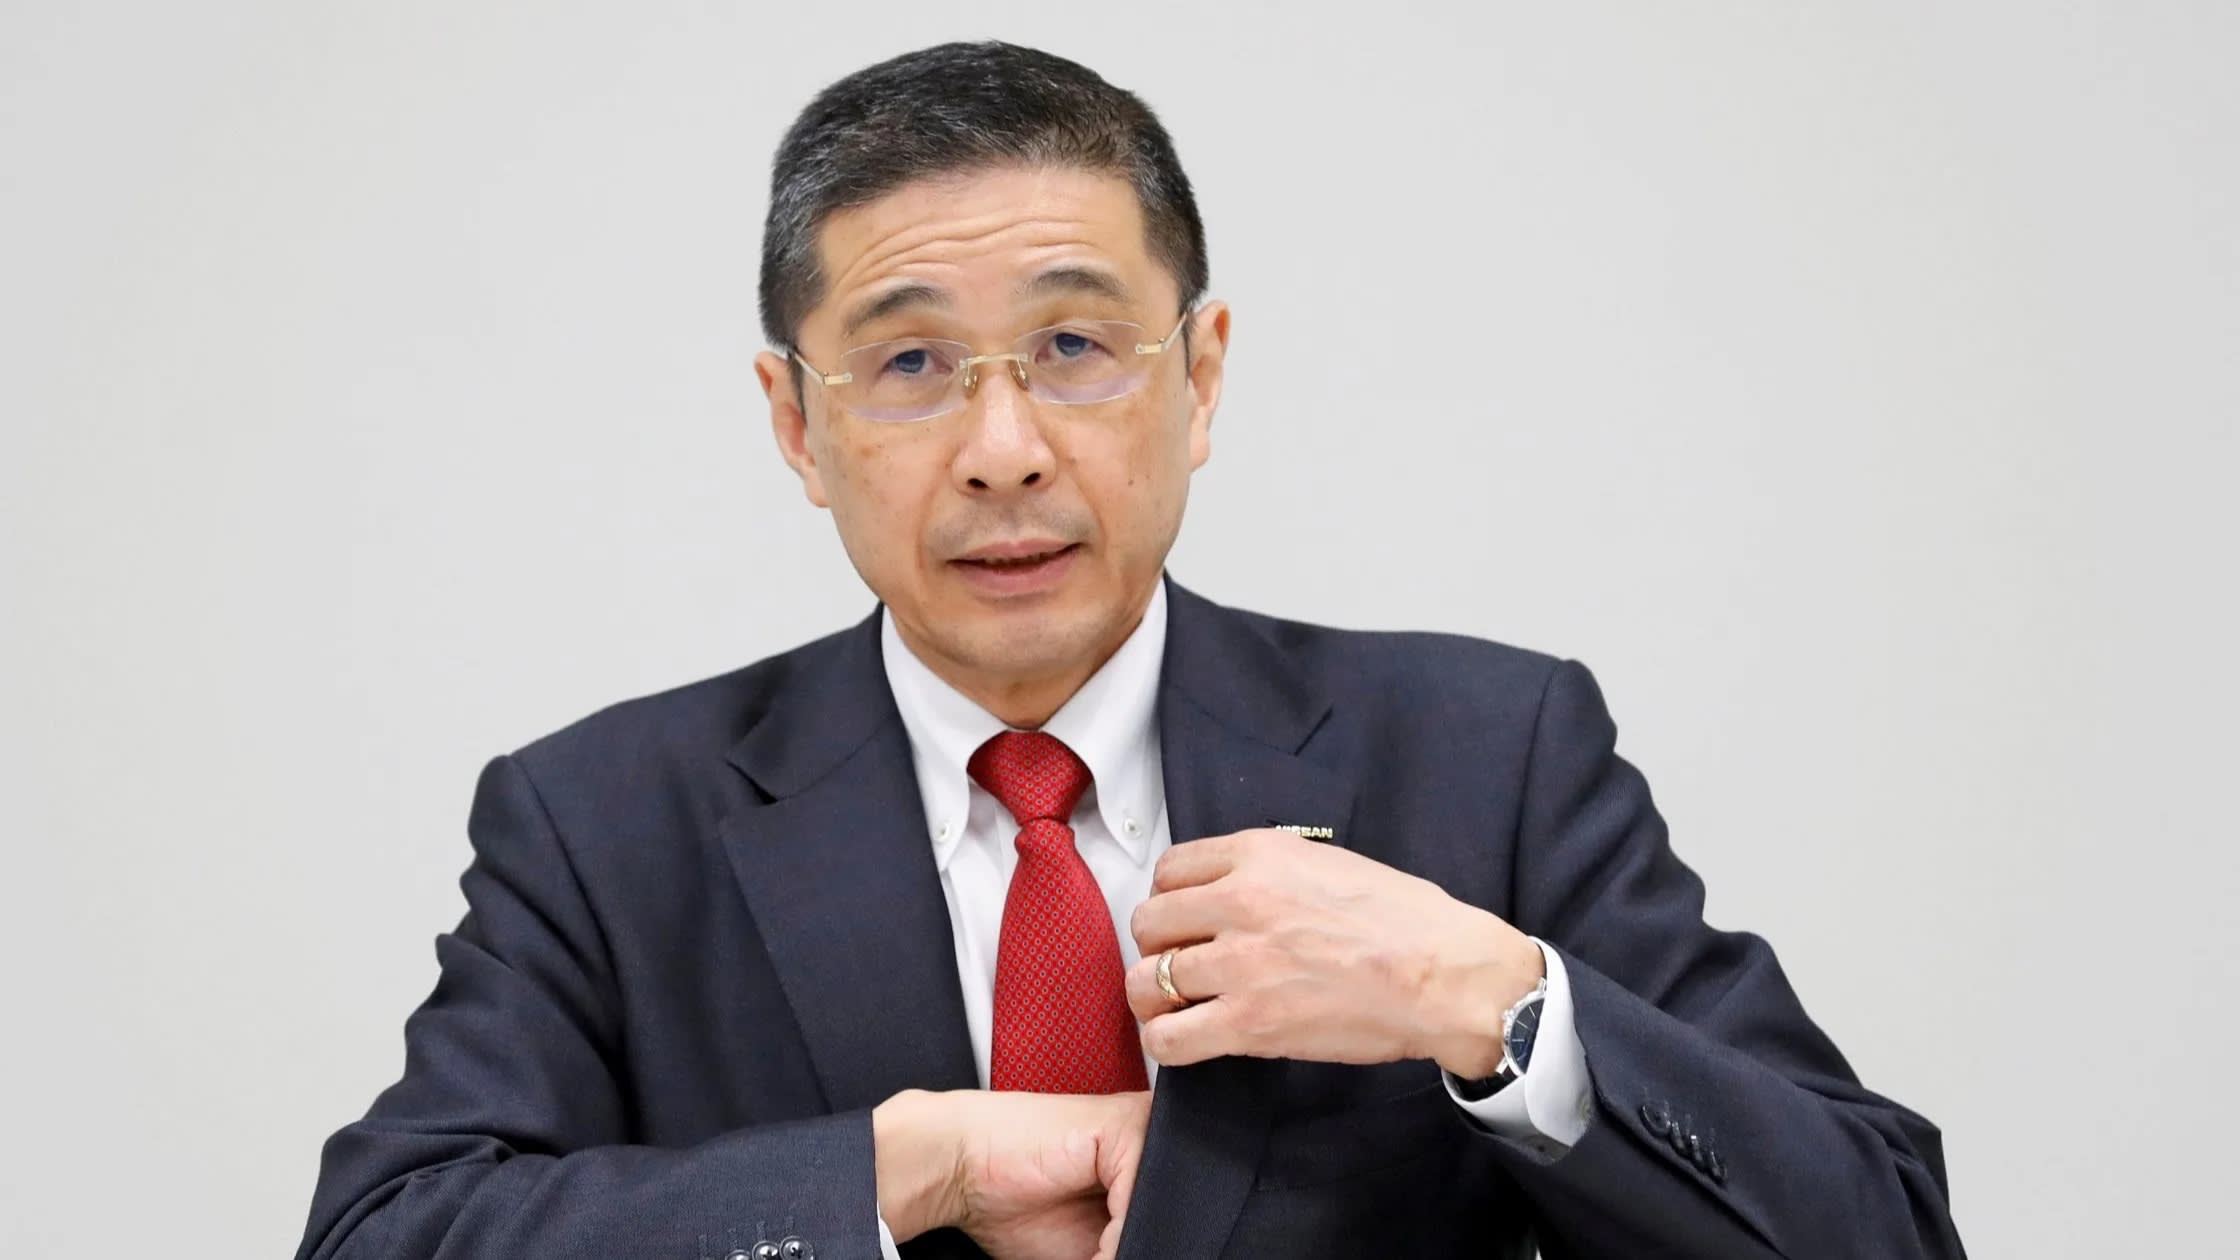 Berita, Hiroto Saikawa: Polemik Uang, CEO Nissan Hiroto Saikawa Mengundurkan Diri